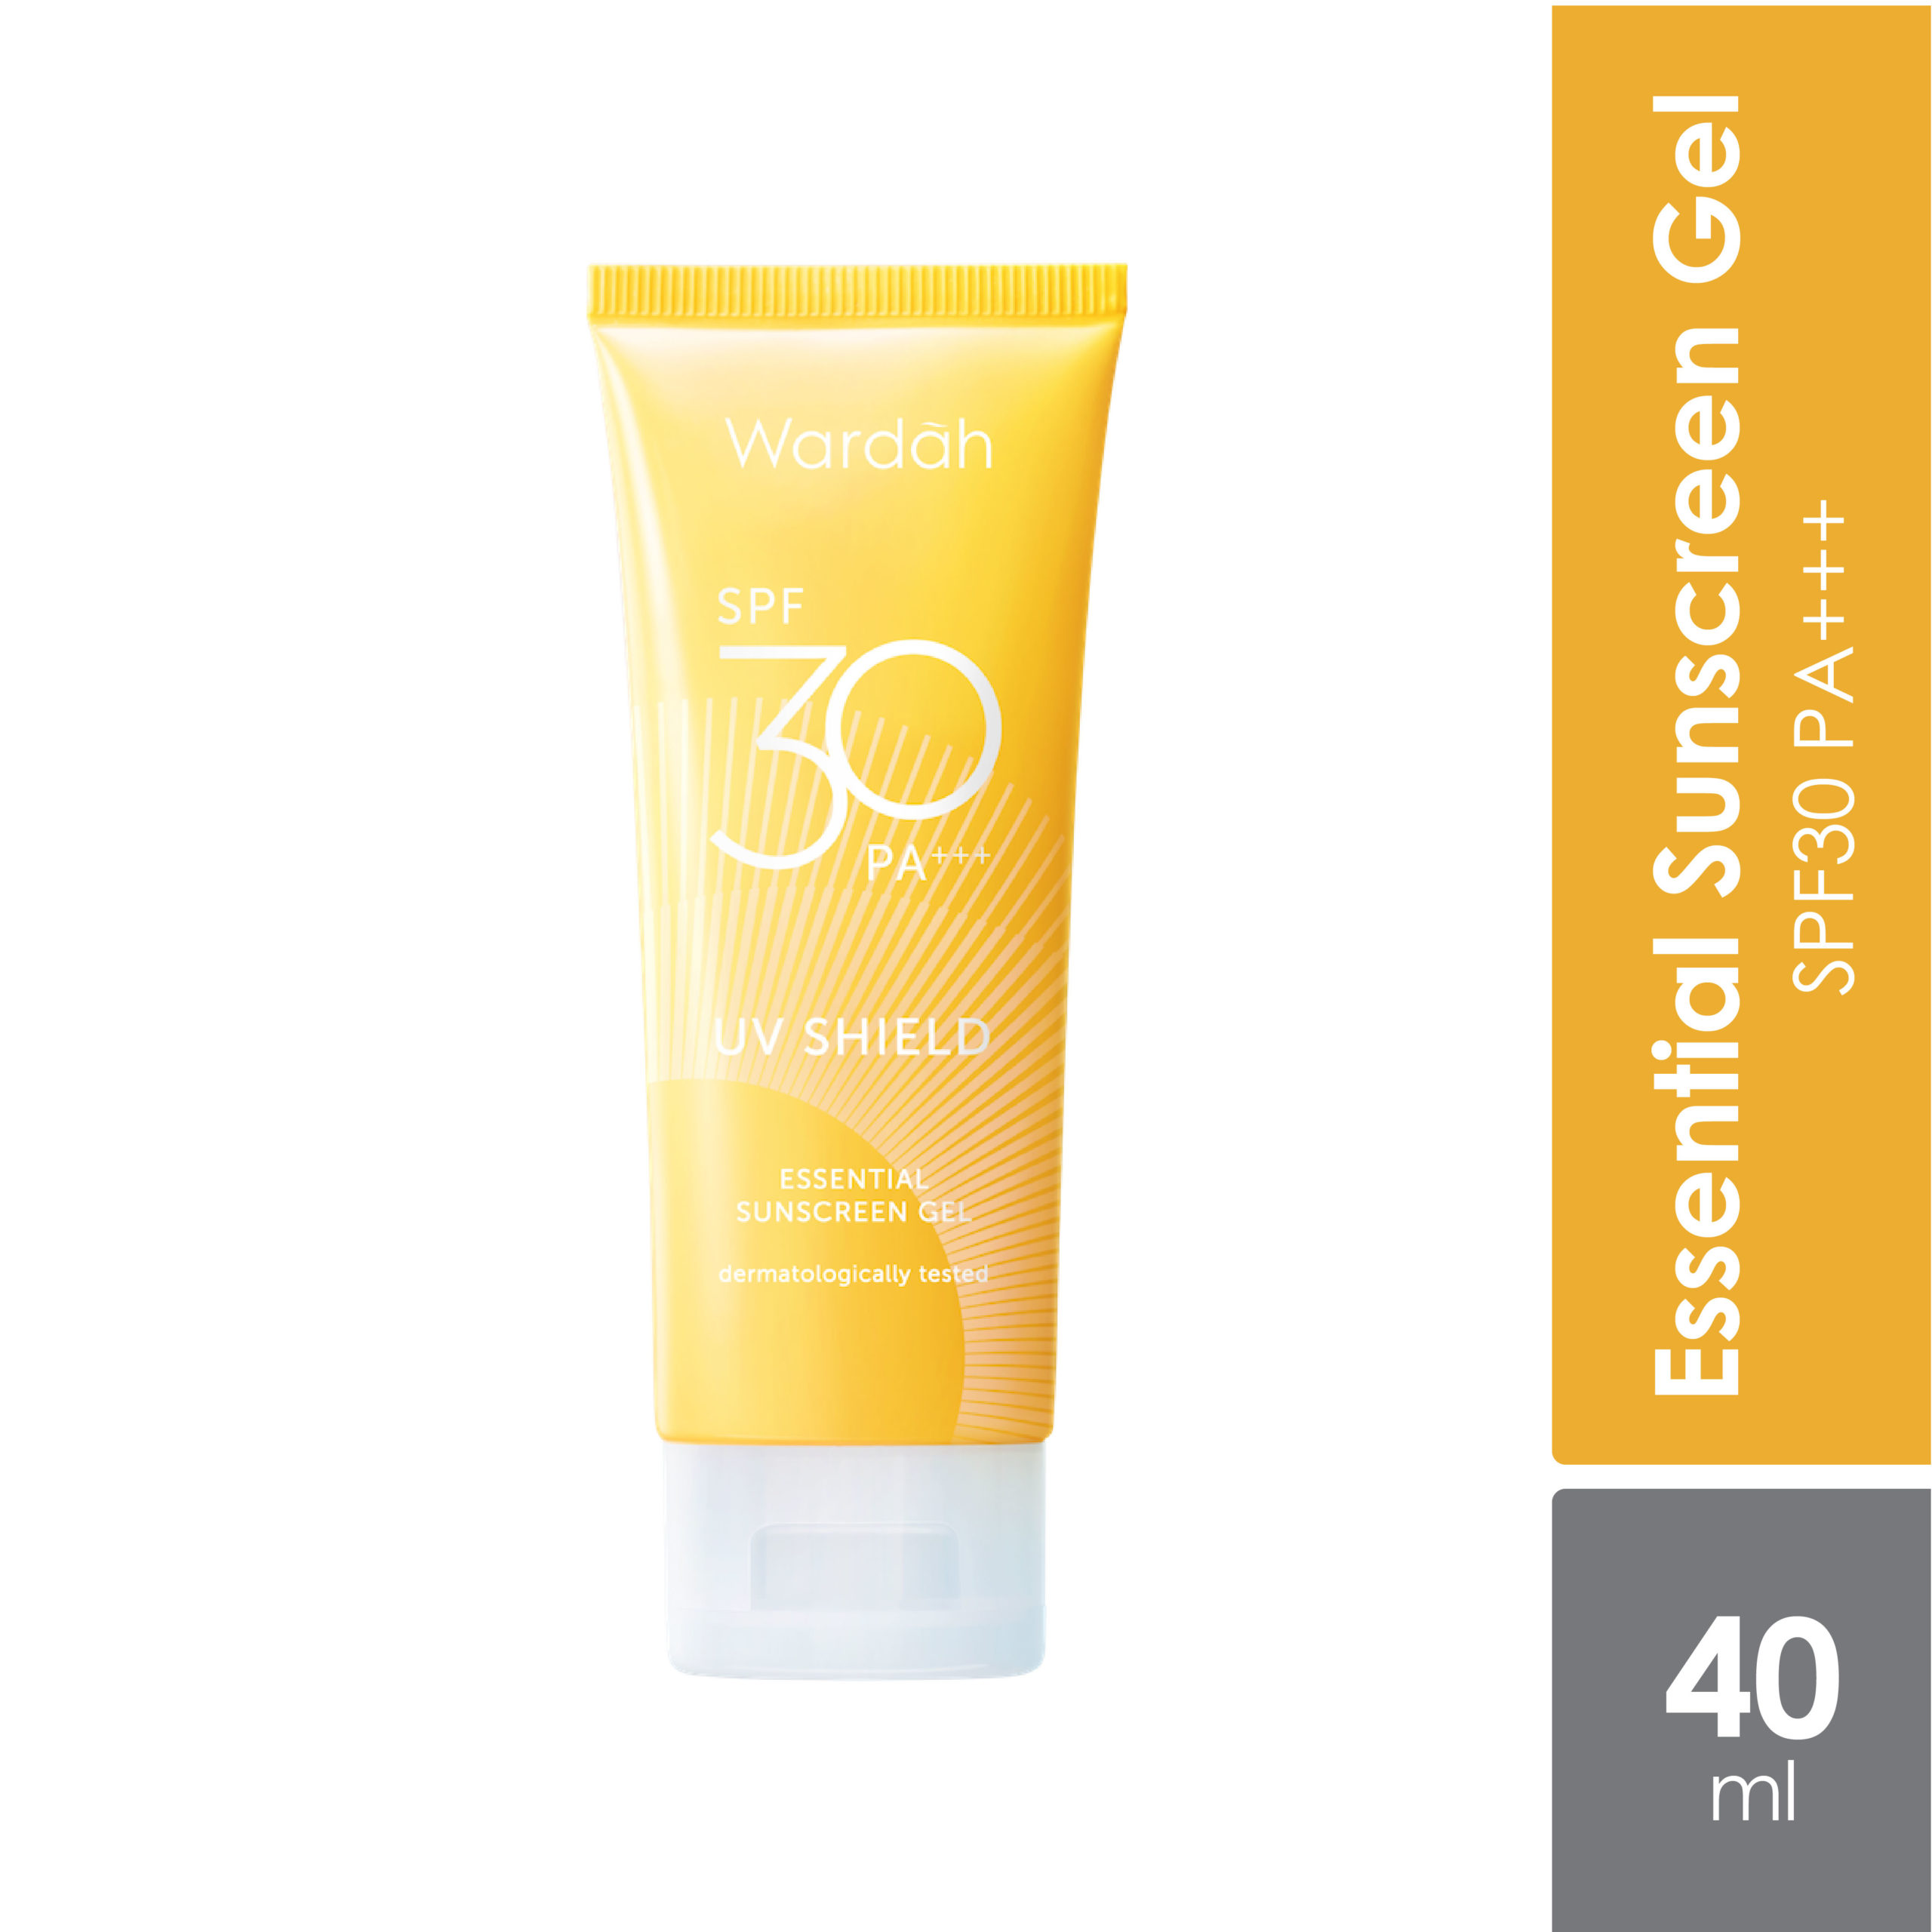 Sunscreen wardah spf 30